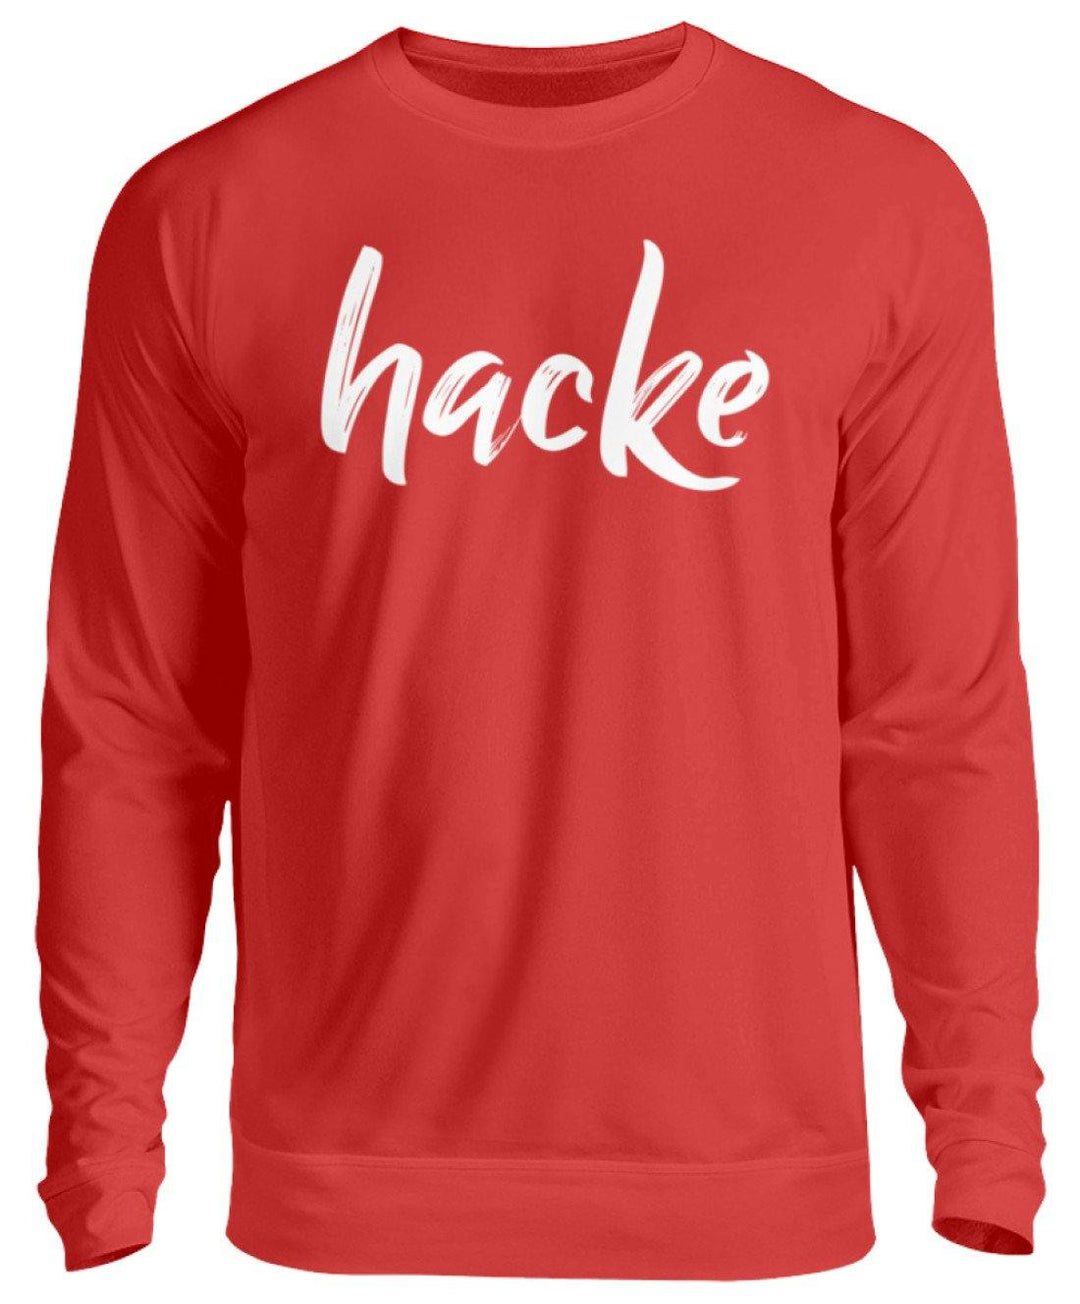 hacke Shirt  - Unisex Pullover - Words on Shirts Sag es mit dem Mittelfinger Shirts Hoodies Sweatshirt Taschen Gymsack Spruch Sprüche Statement